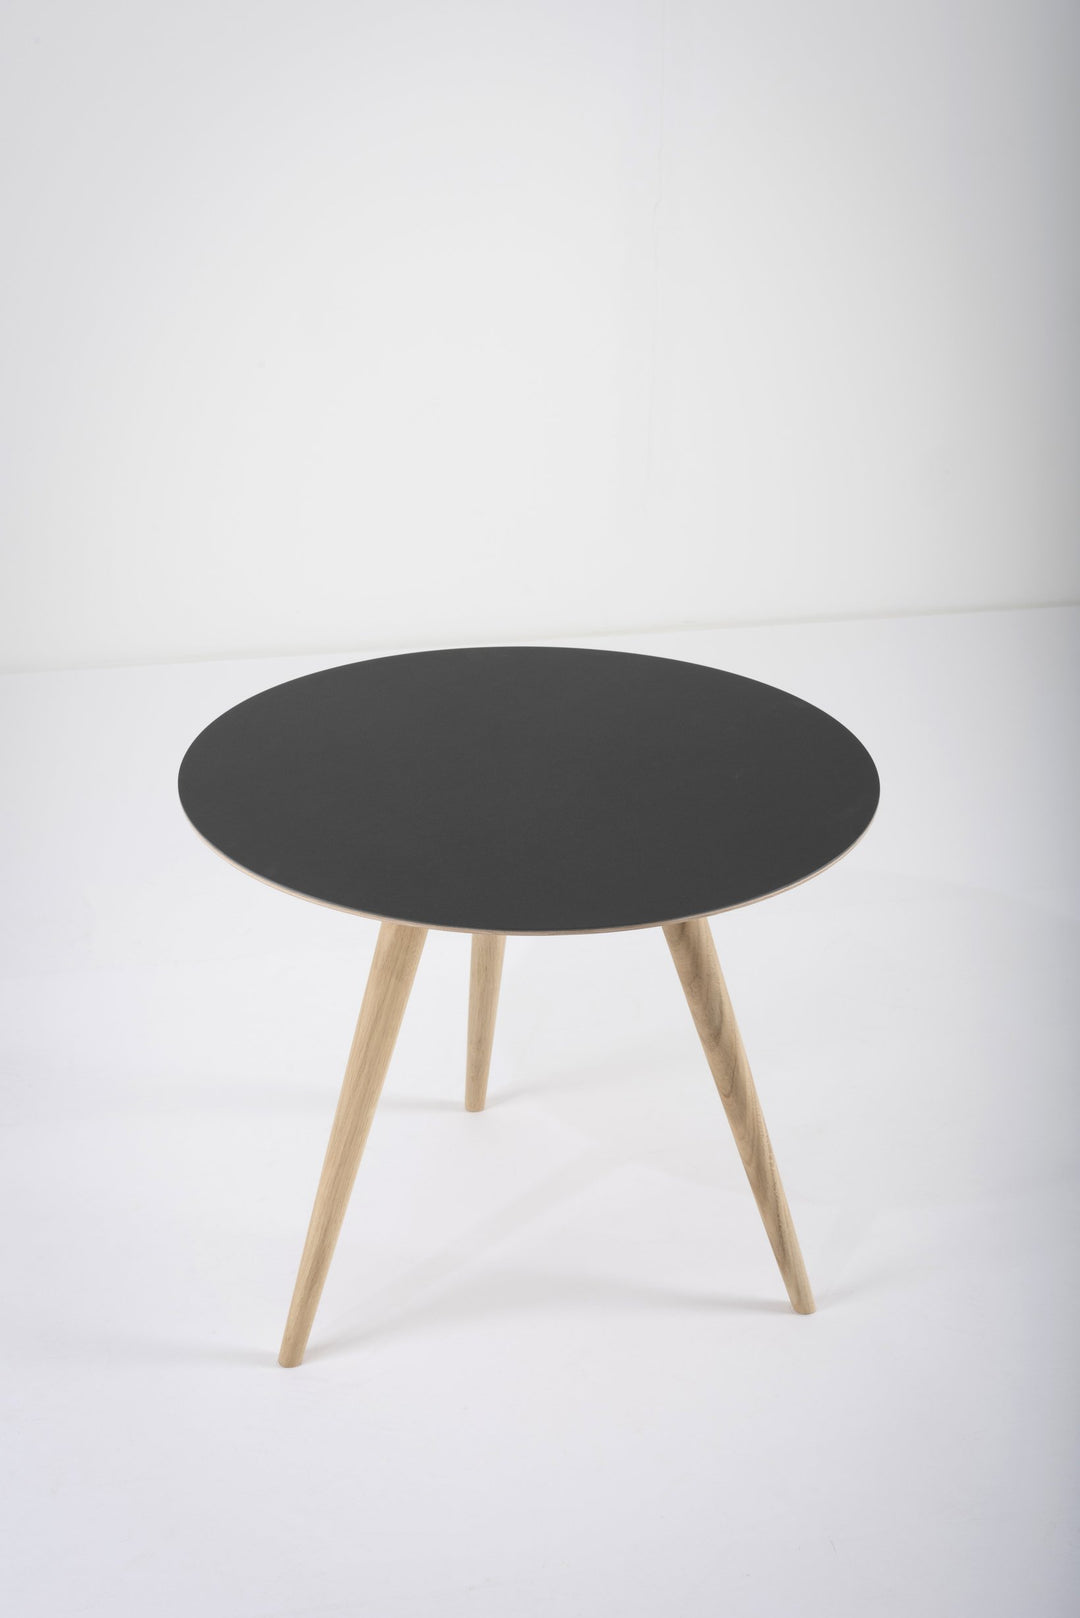 Gazzda Tisch Eiche weiß 1015 / schwarz Nero 4023 ARP Beistelltisch von Gazzda - runder Tisch mit 55cm Durchmesser